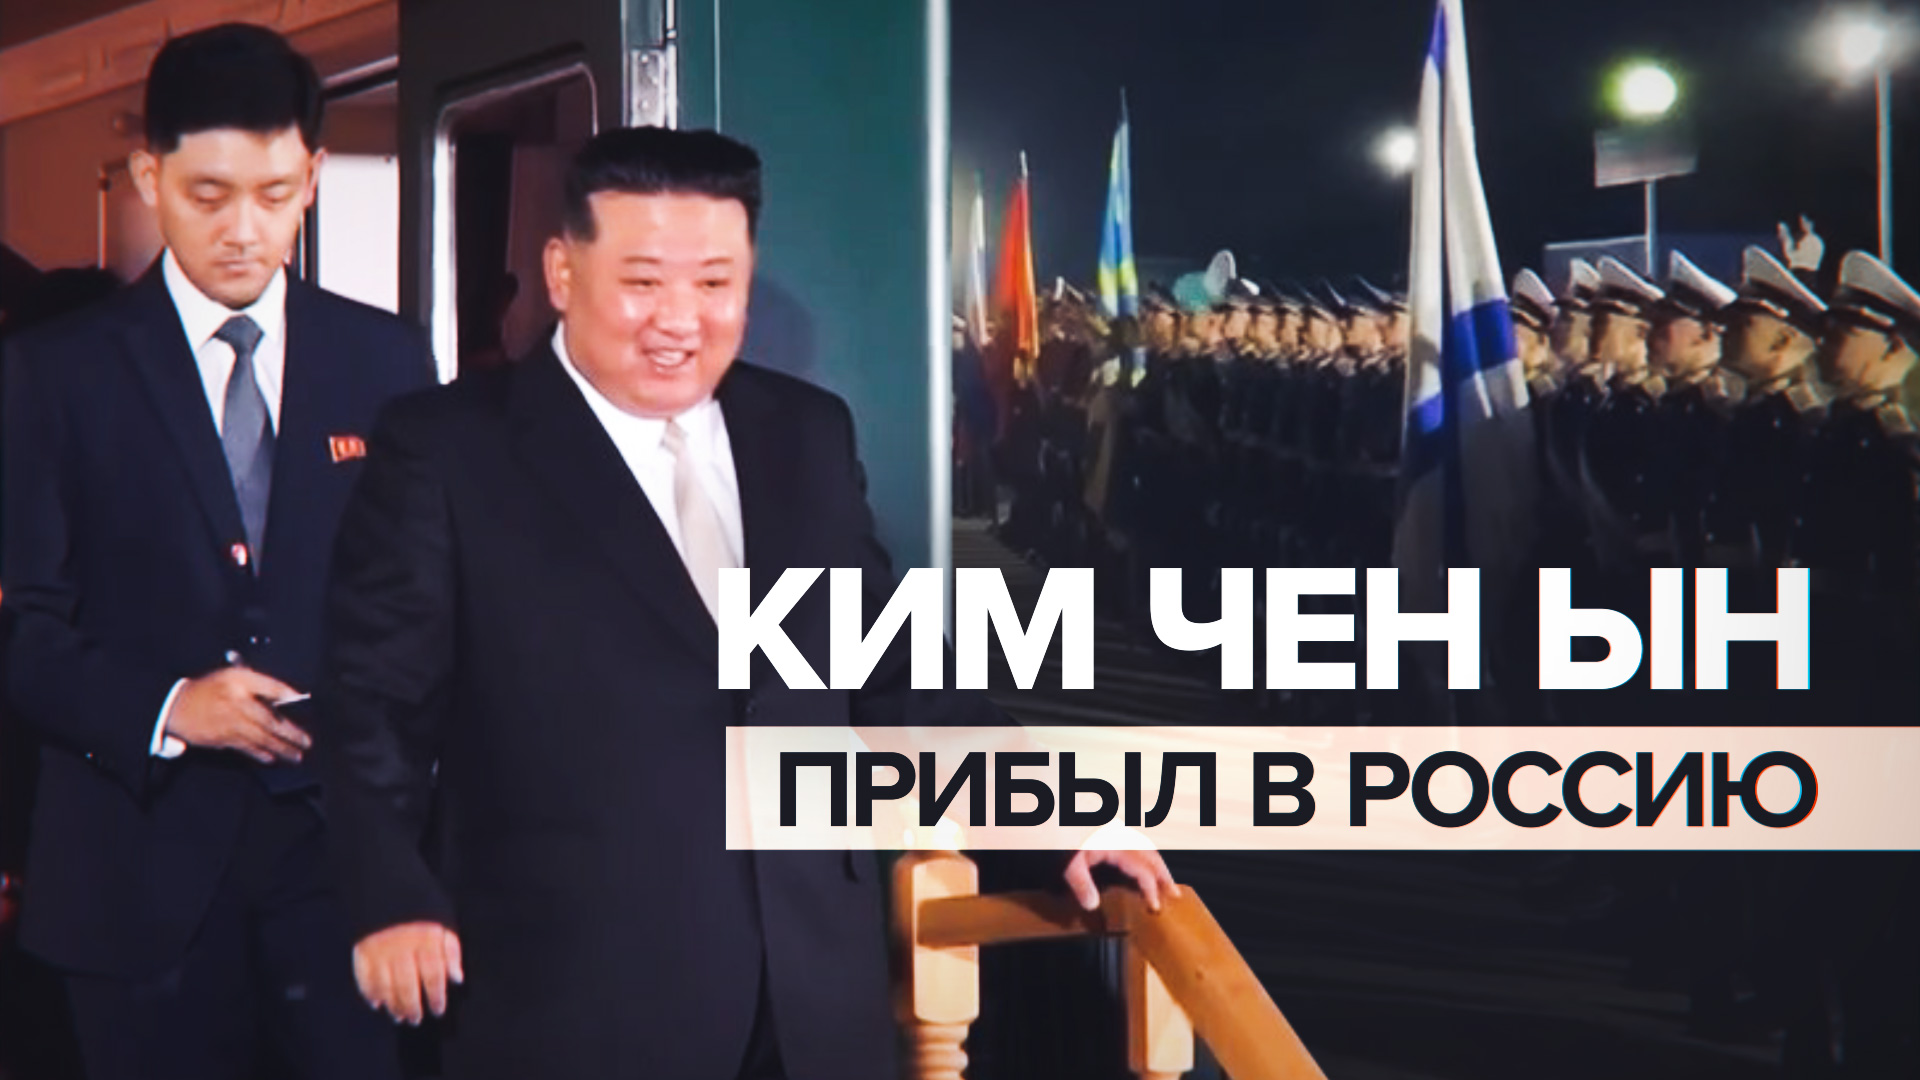 Ким Чен Ын прибыл в Россию — видео